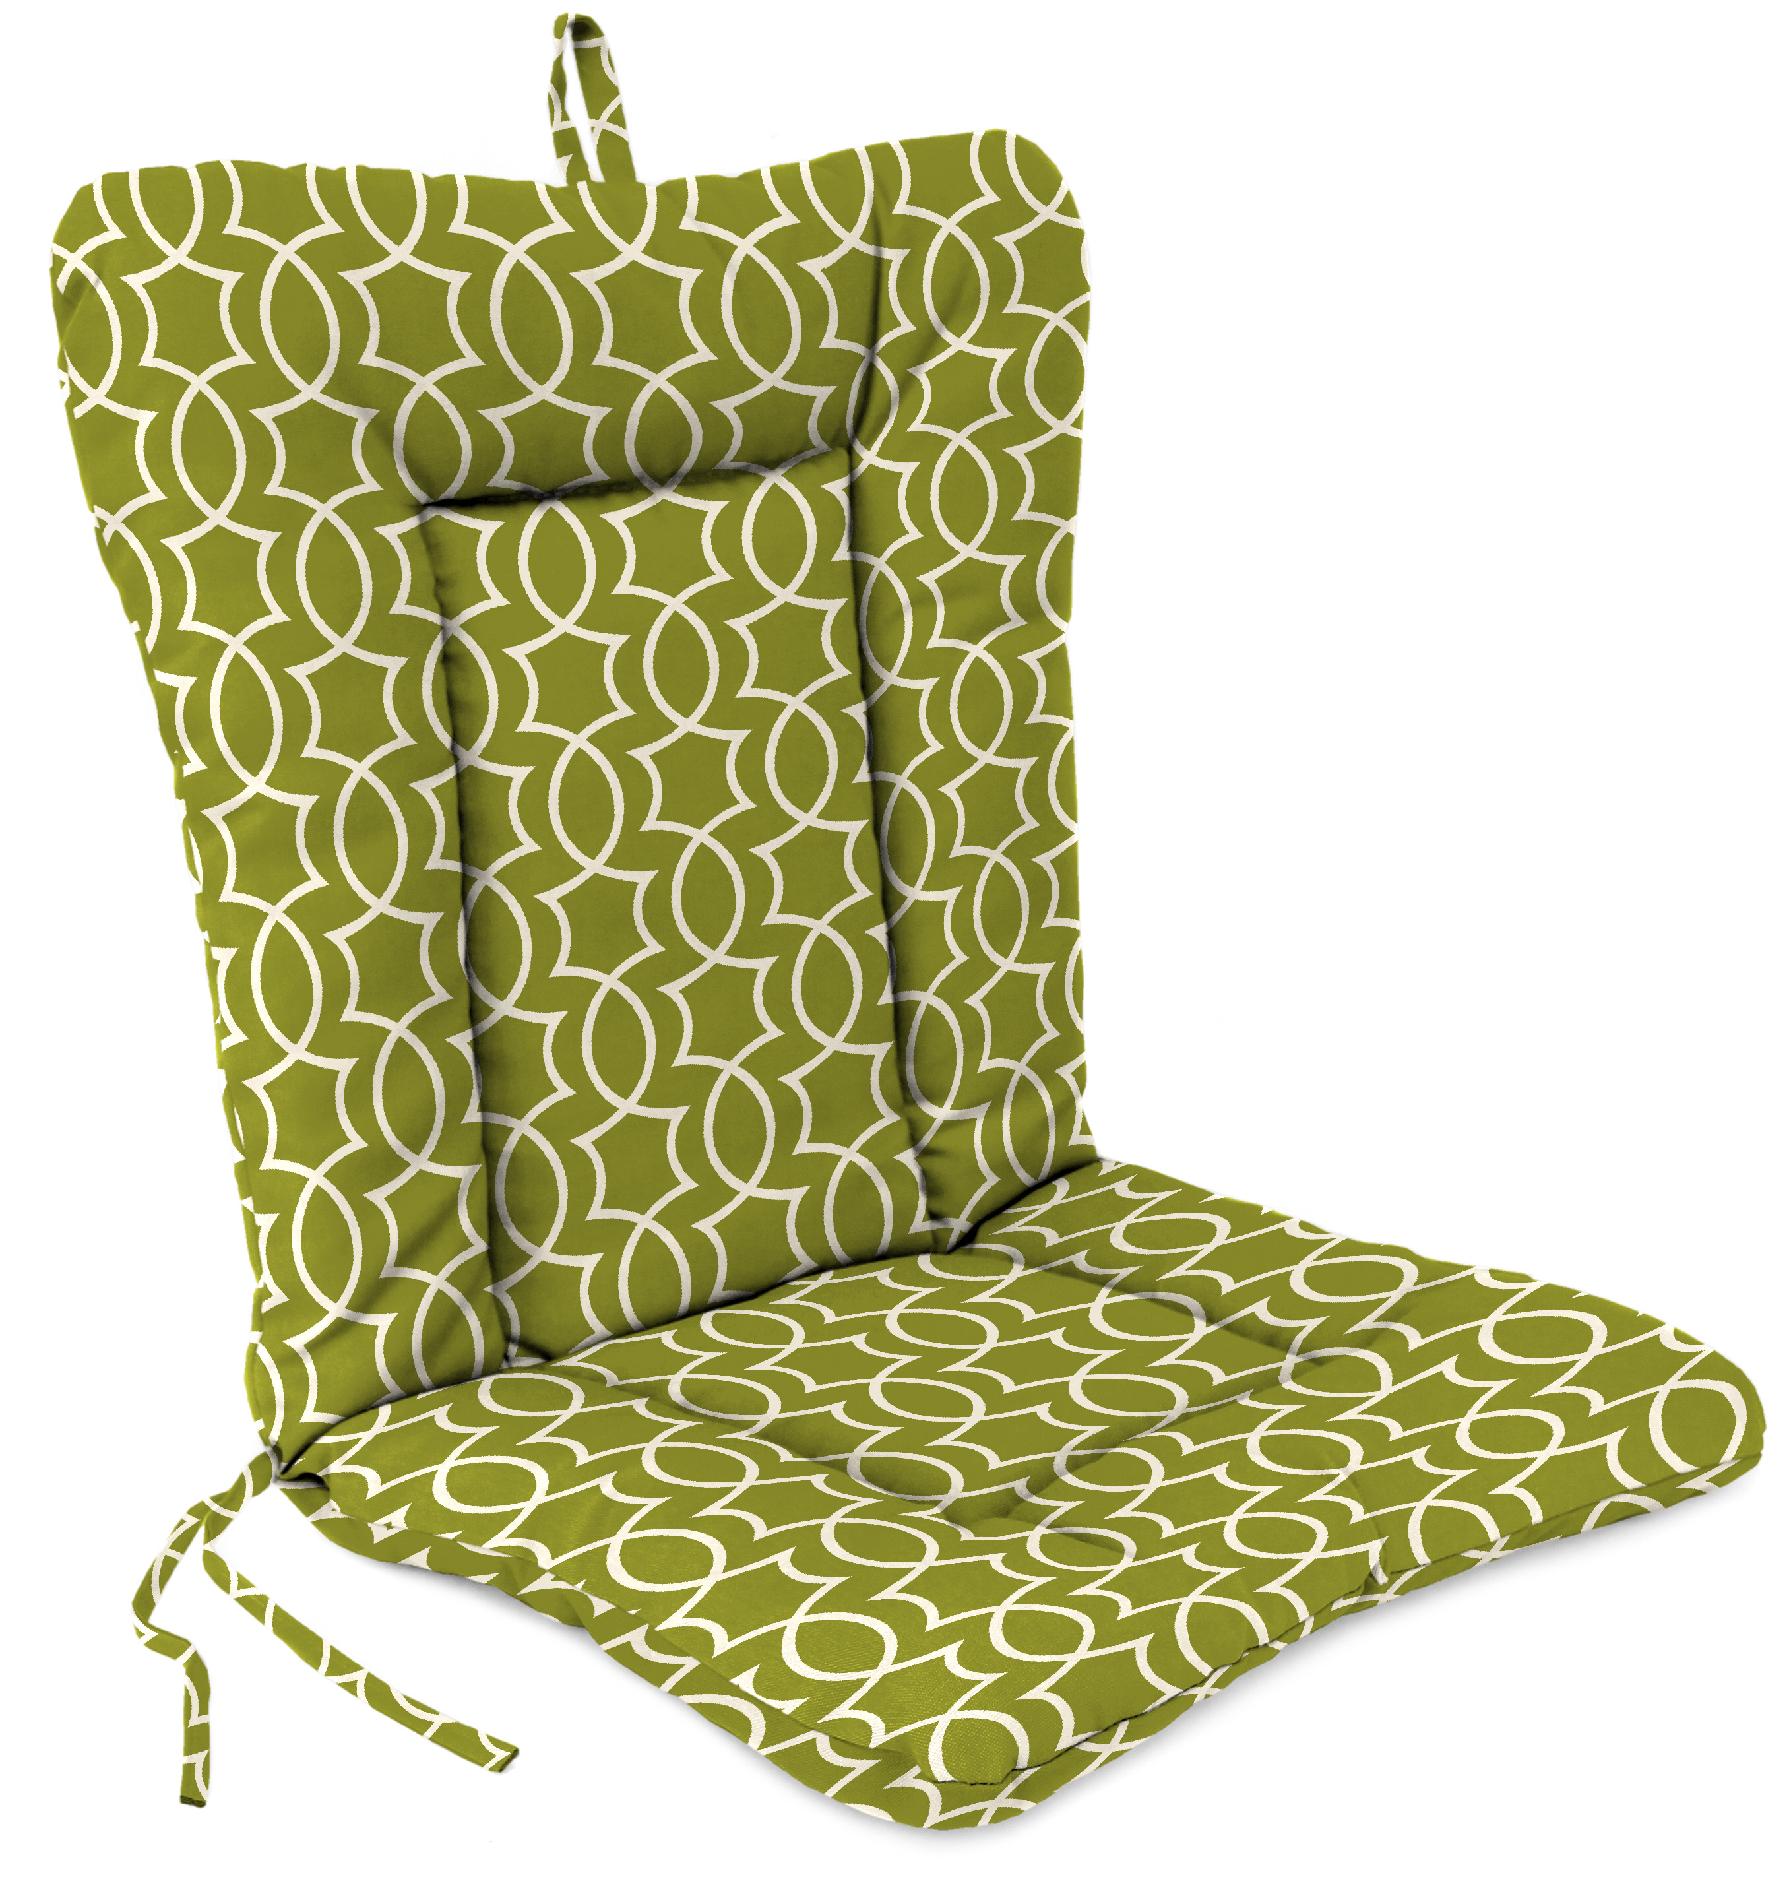 Dinalounge Chair Cushion in Titan Kiwi